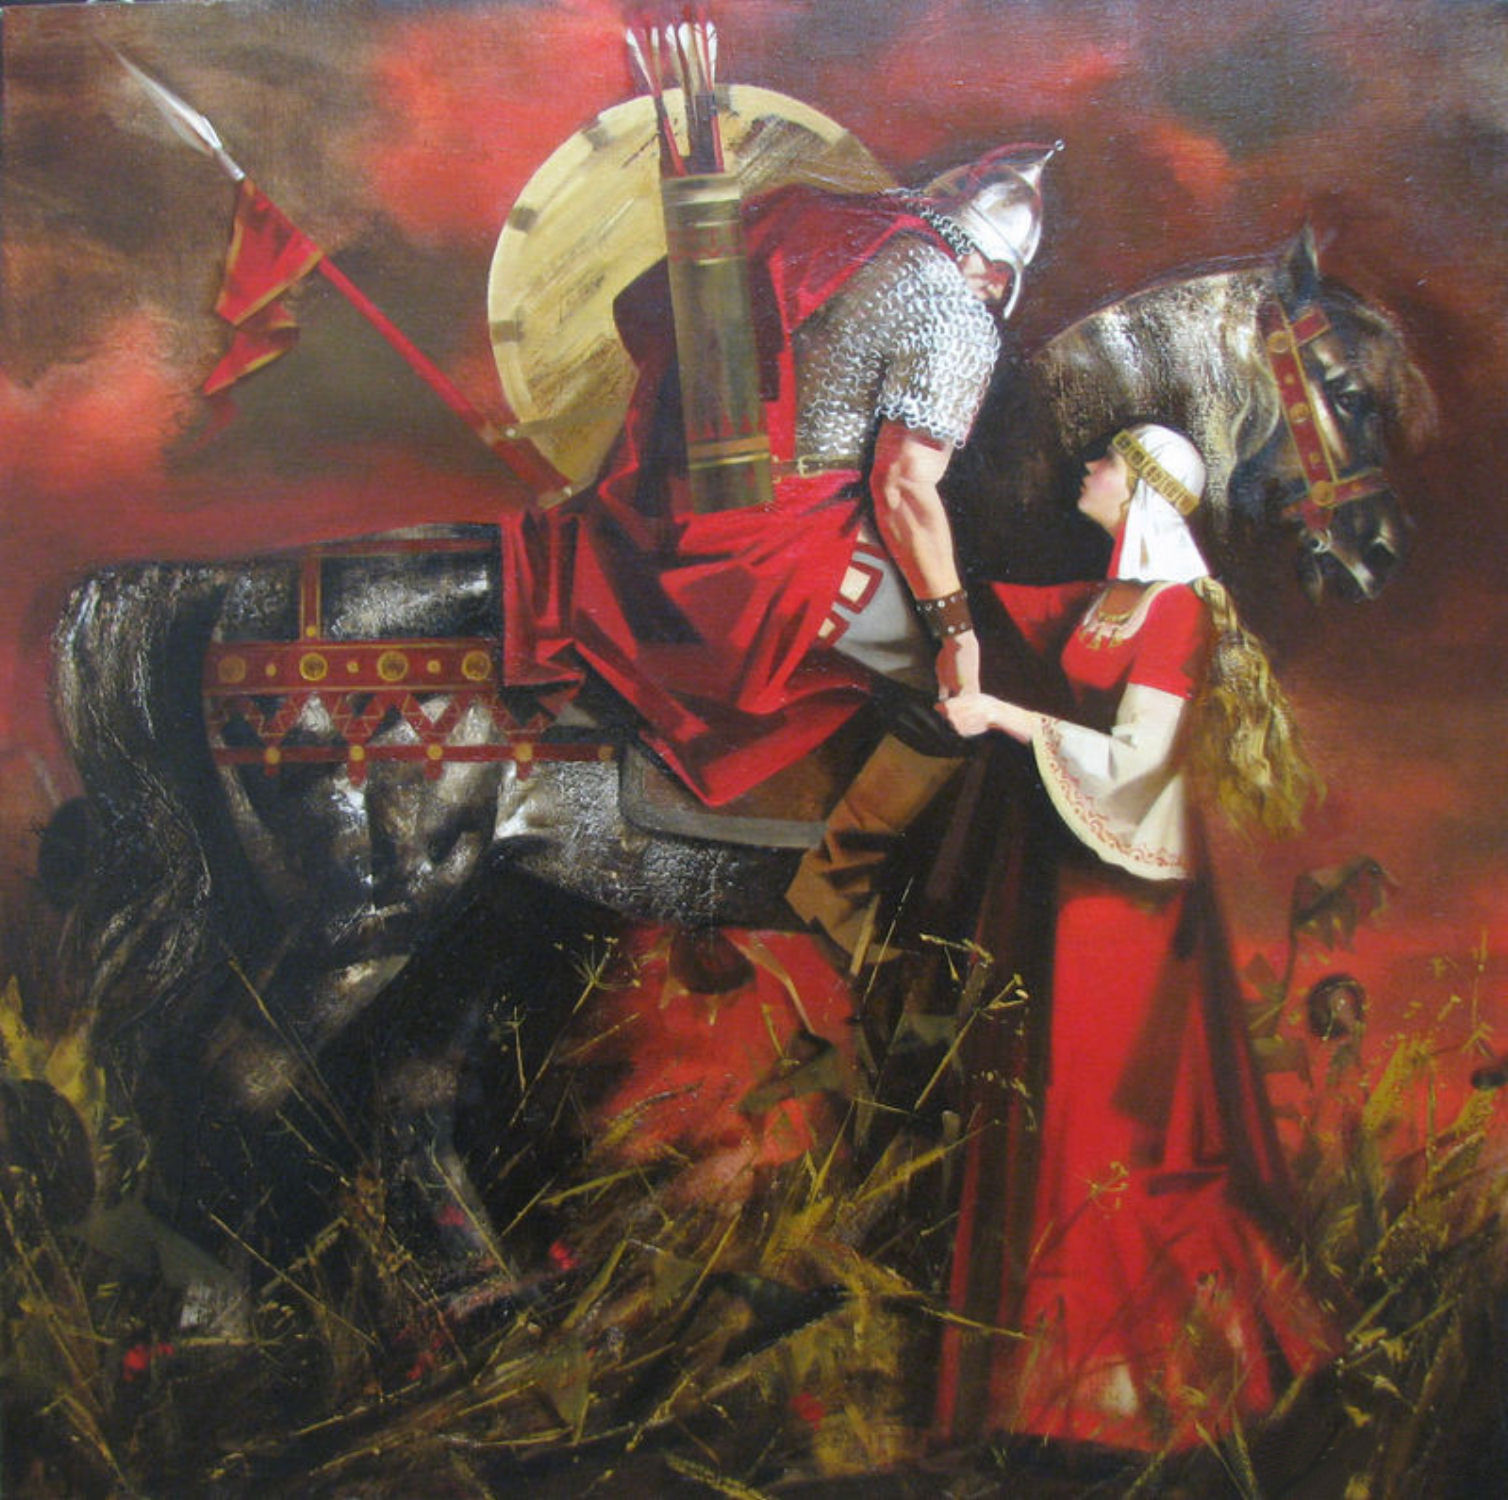 Фото русских богатырей древней руси в бою